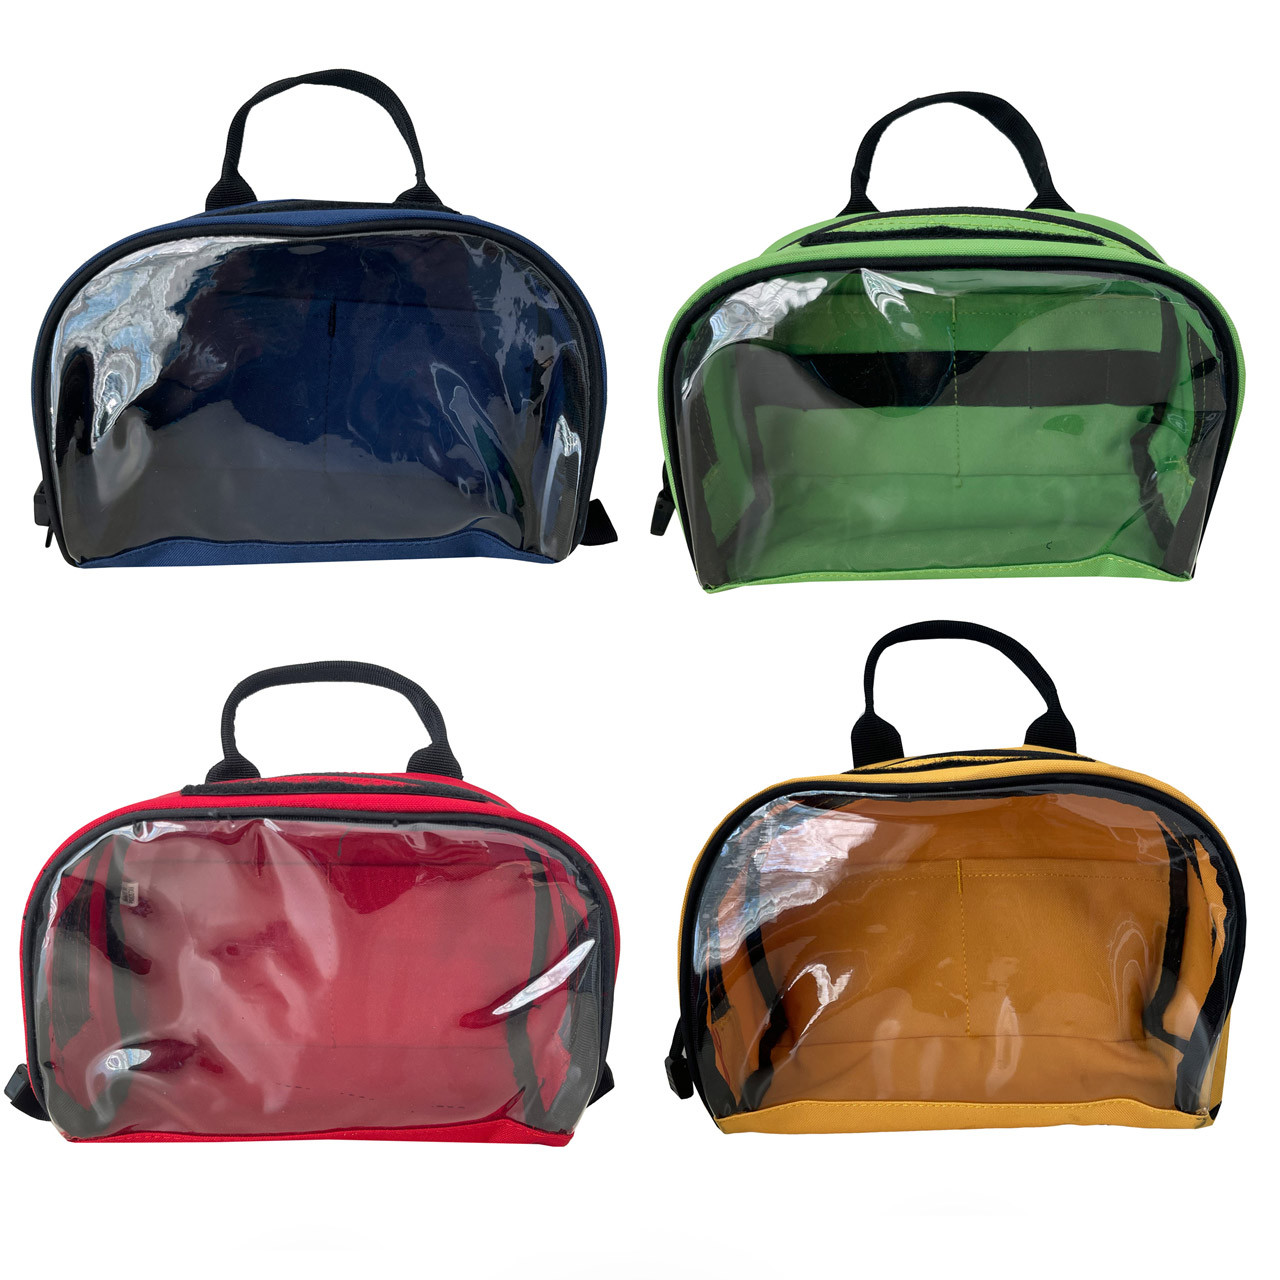 Purse Insert Storage Bag, Versatile Travel Organizer Bag Insert